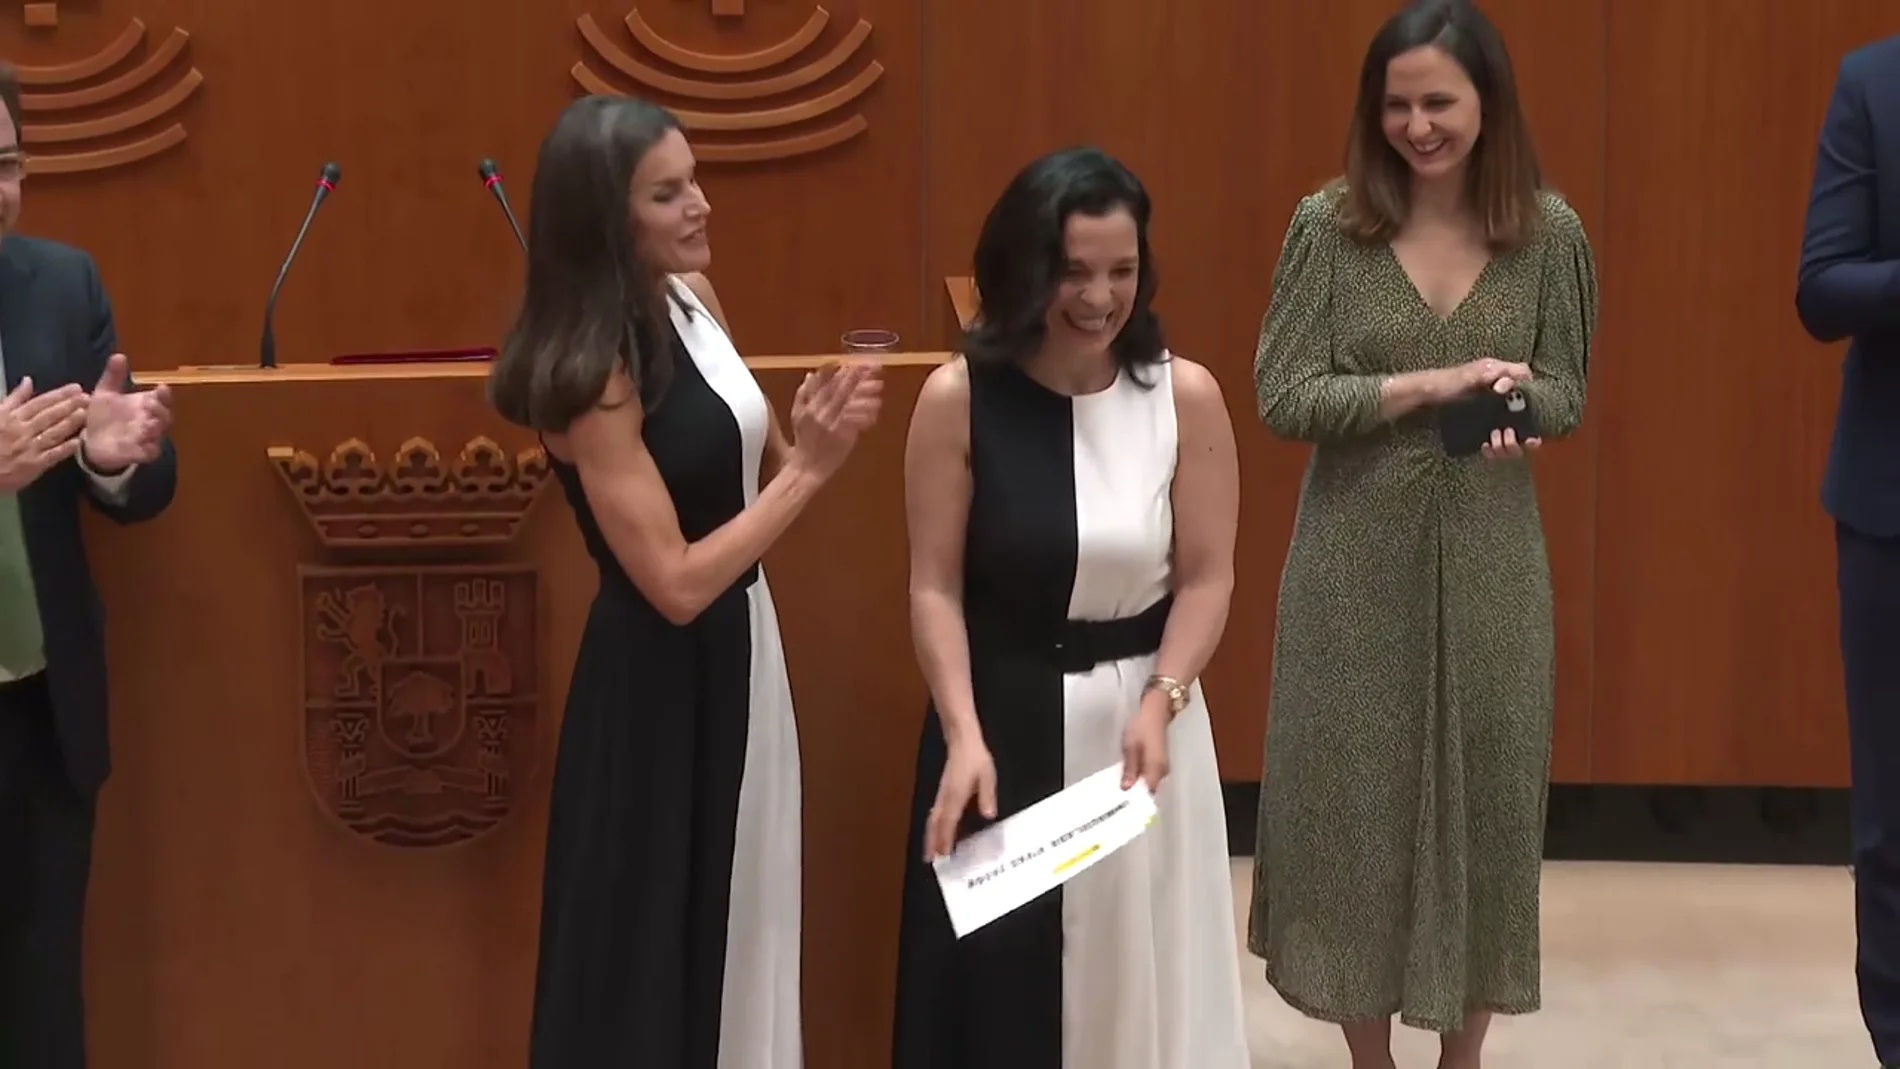 La reina Letizia entrega un premio y una de las galardonadas lleva el mismo vestido de Mango que ella